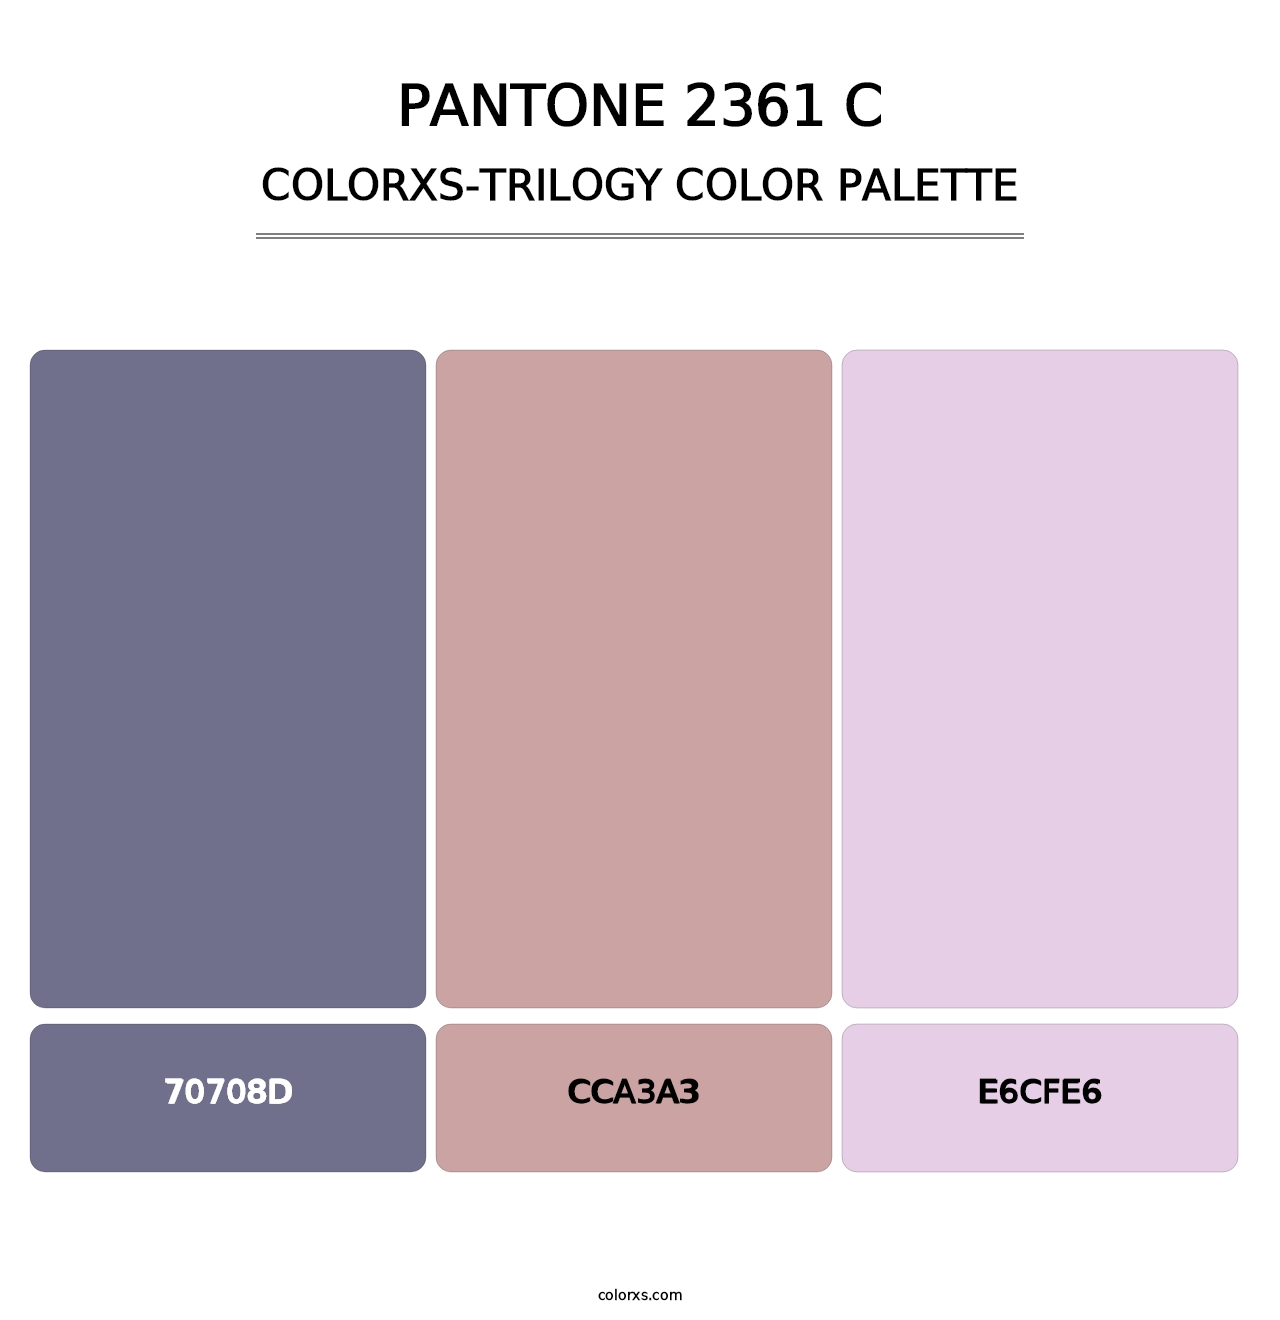 PANTONE 2361 C - Colorxs Trilogy Palette